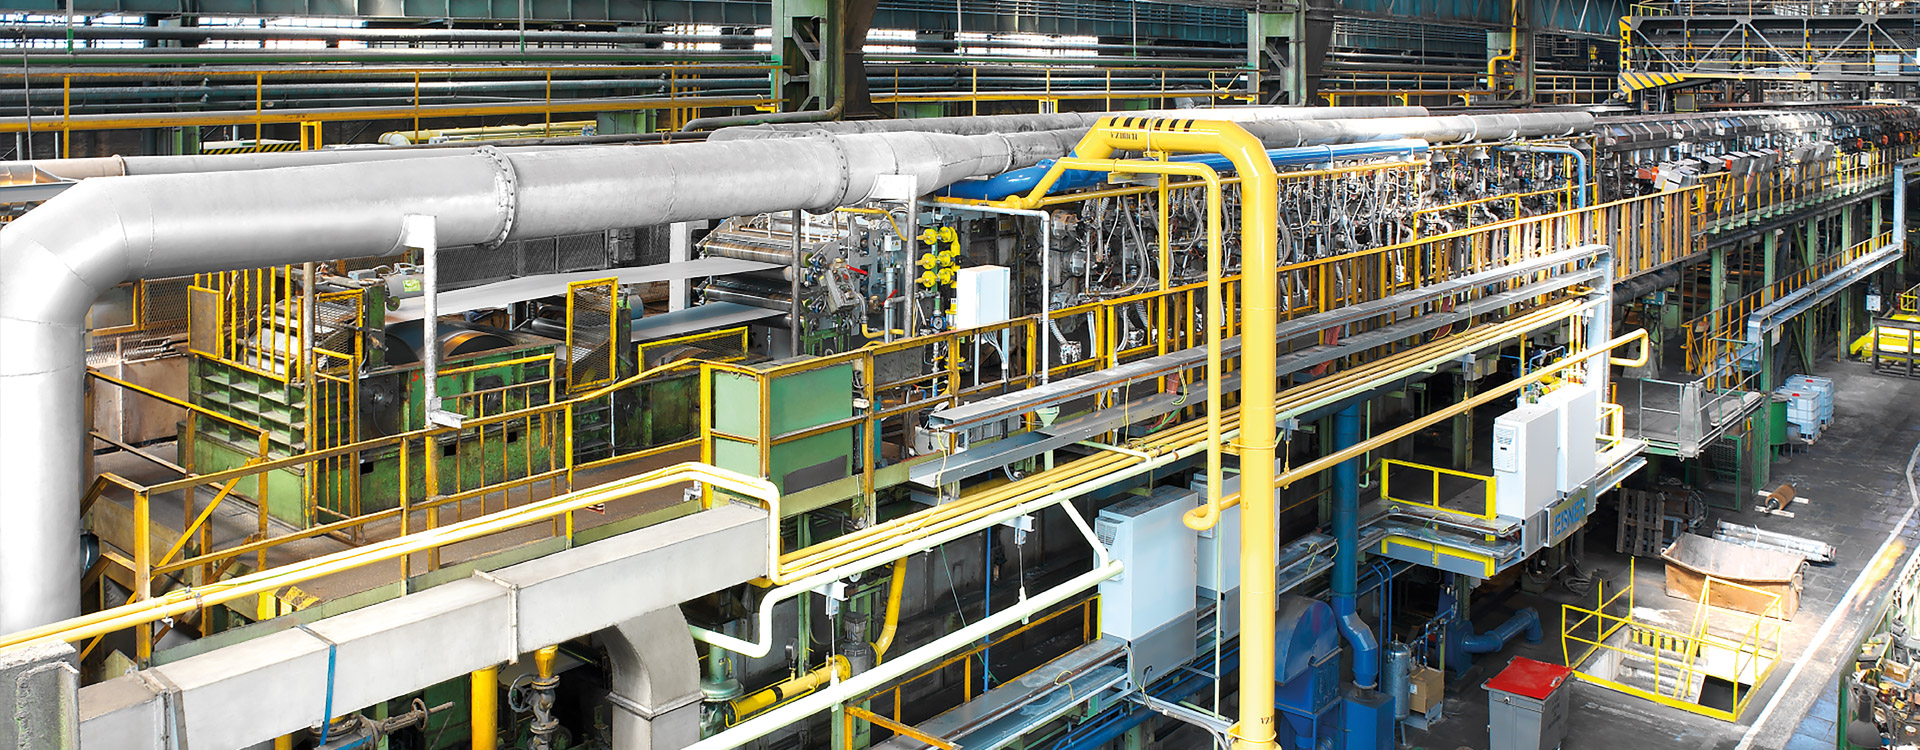 HICON/H2 ® decarburization line at GO Stalprodukt, Frydek-Mistek, Czech Republic